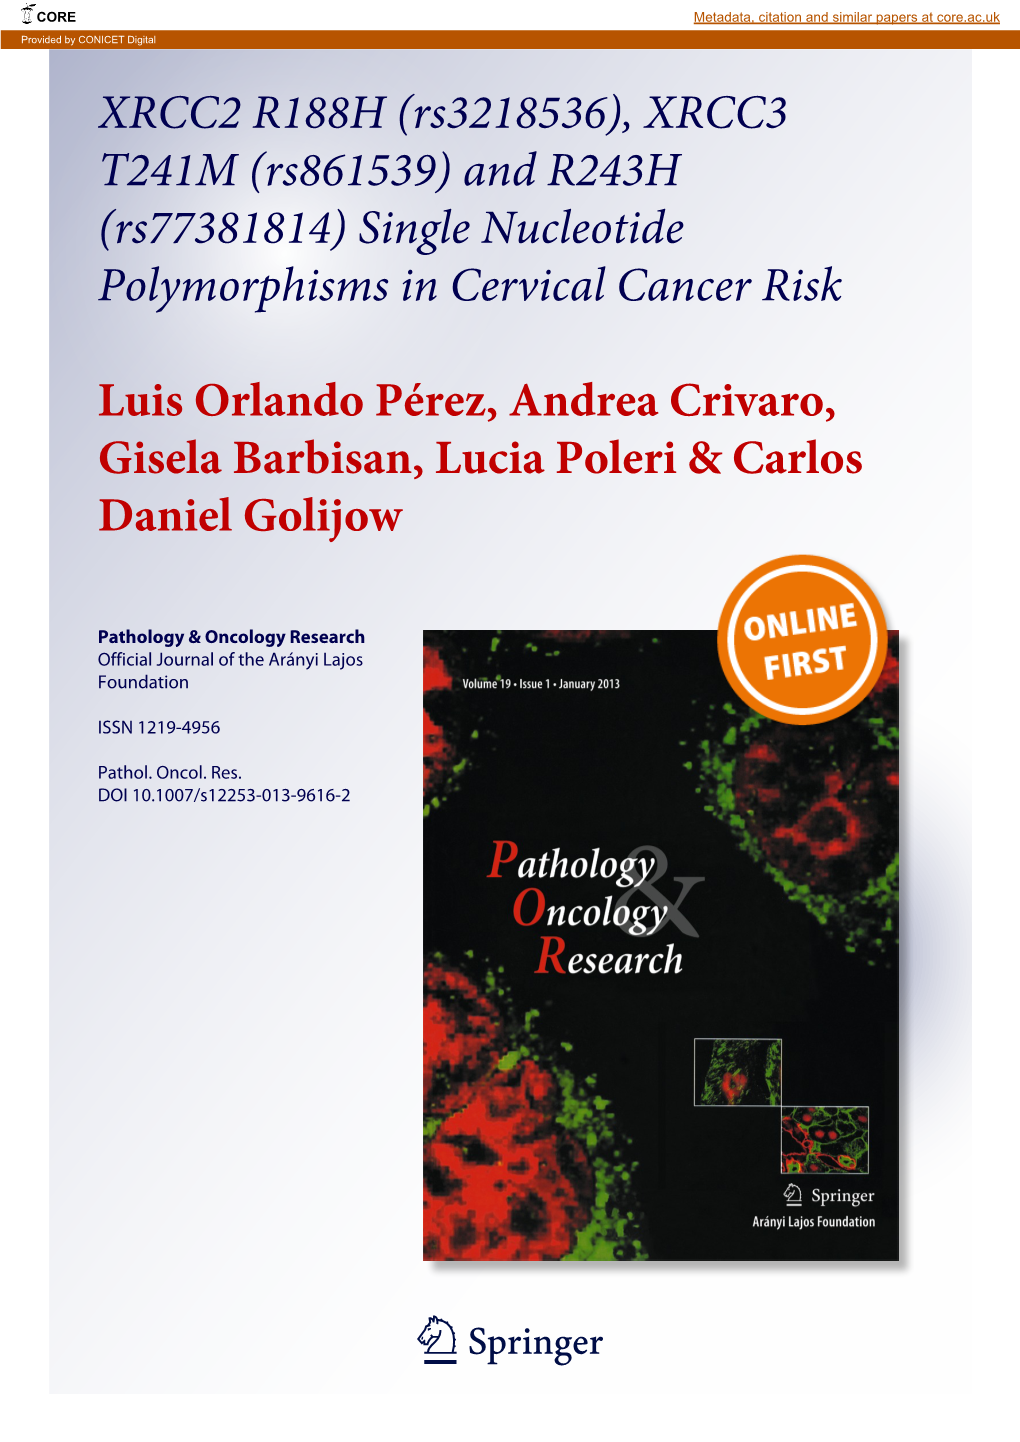 XRCC2 R188H (Rs3218536), XRCC3 T241M (Rs861539) and R243H (Rs77381814) Single Nucleotide Polymorphisms in Cervical Cancer Risk